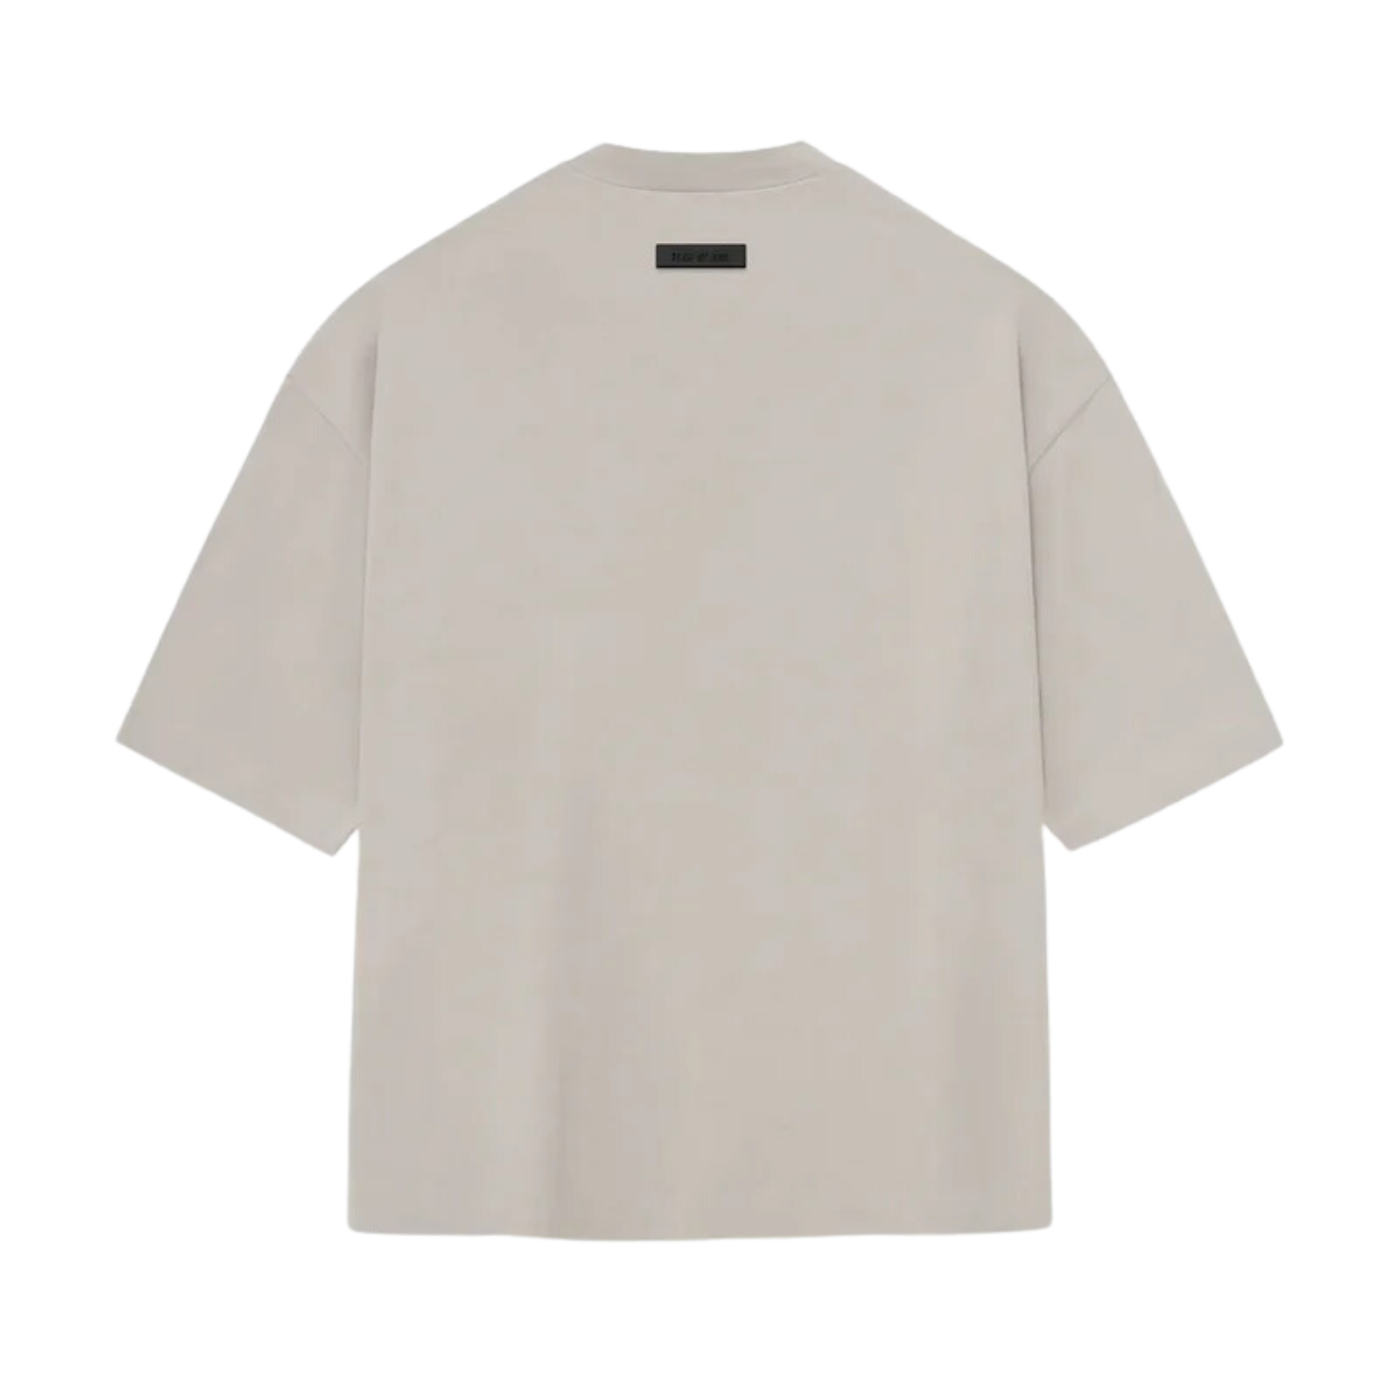 Camiseta Essentials Silver Cloud